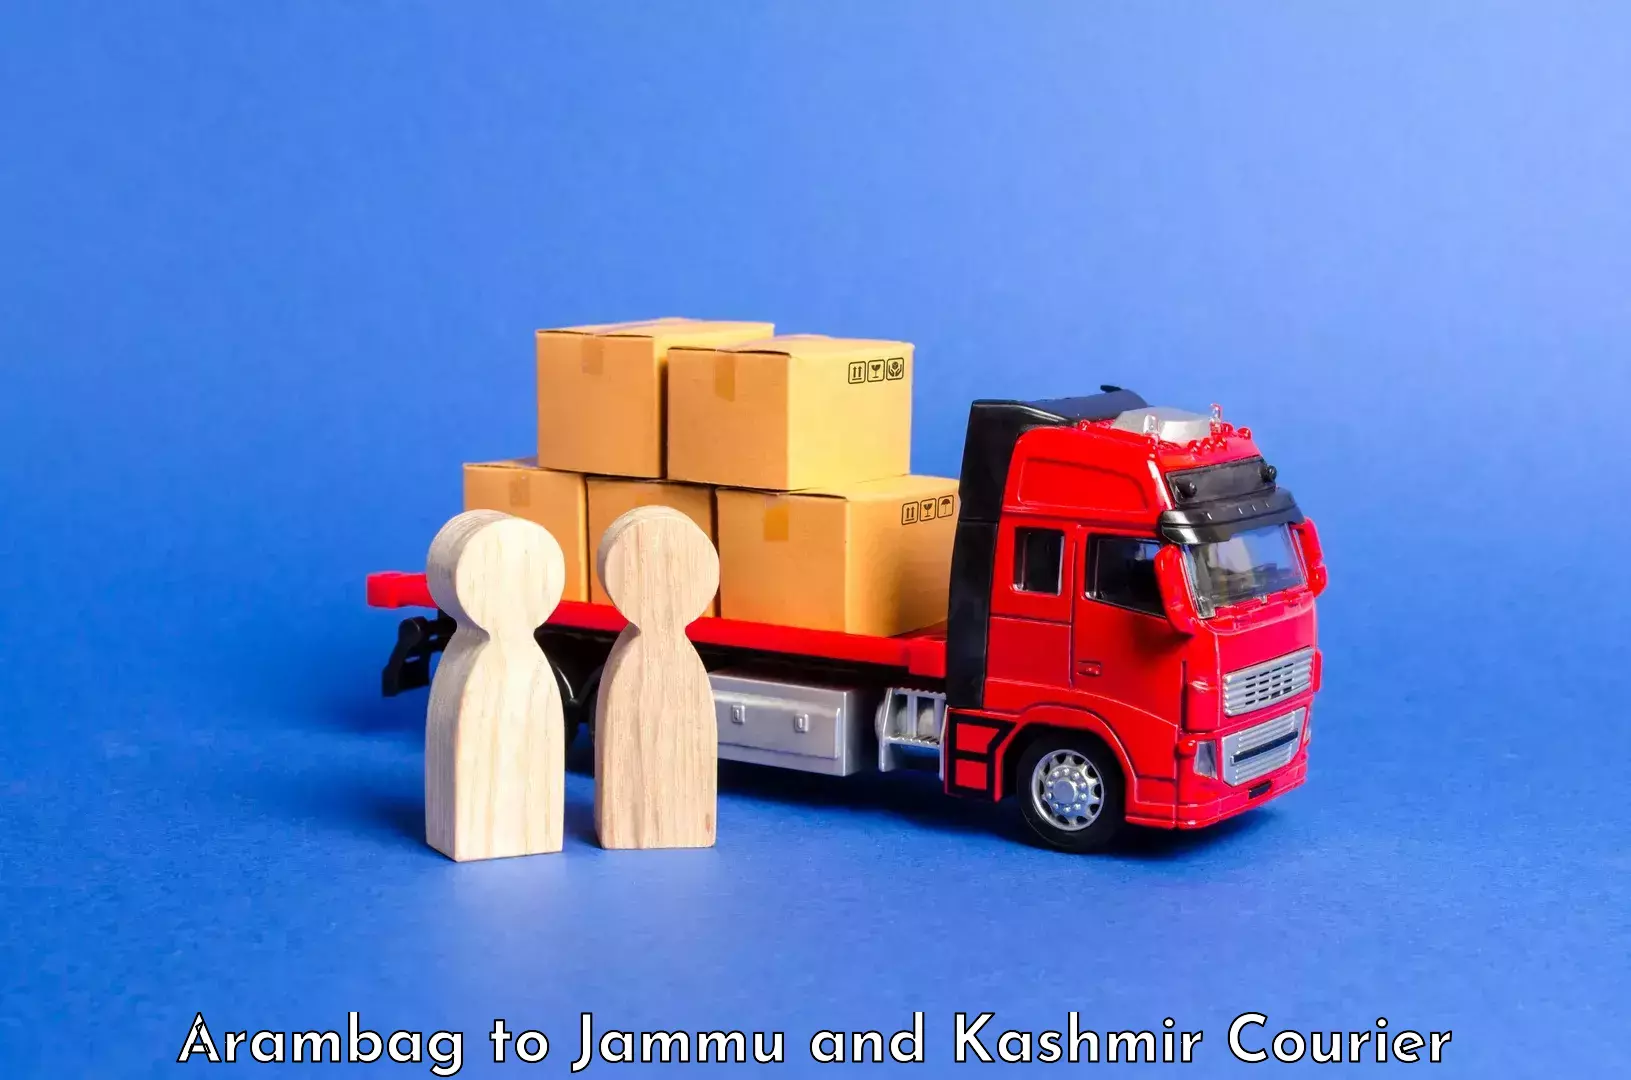 Holiday season luggage delivery Arambag to Jammu and Kashmir